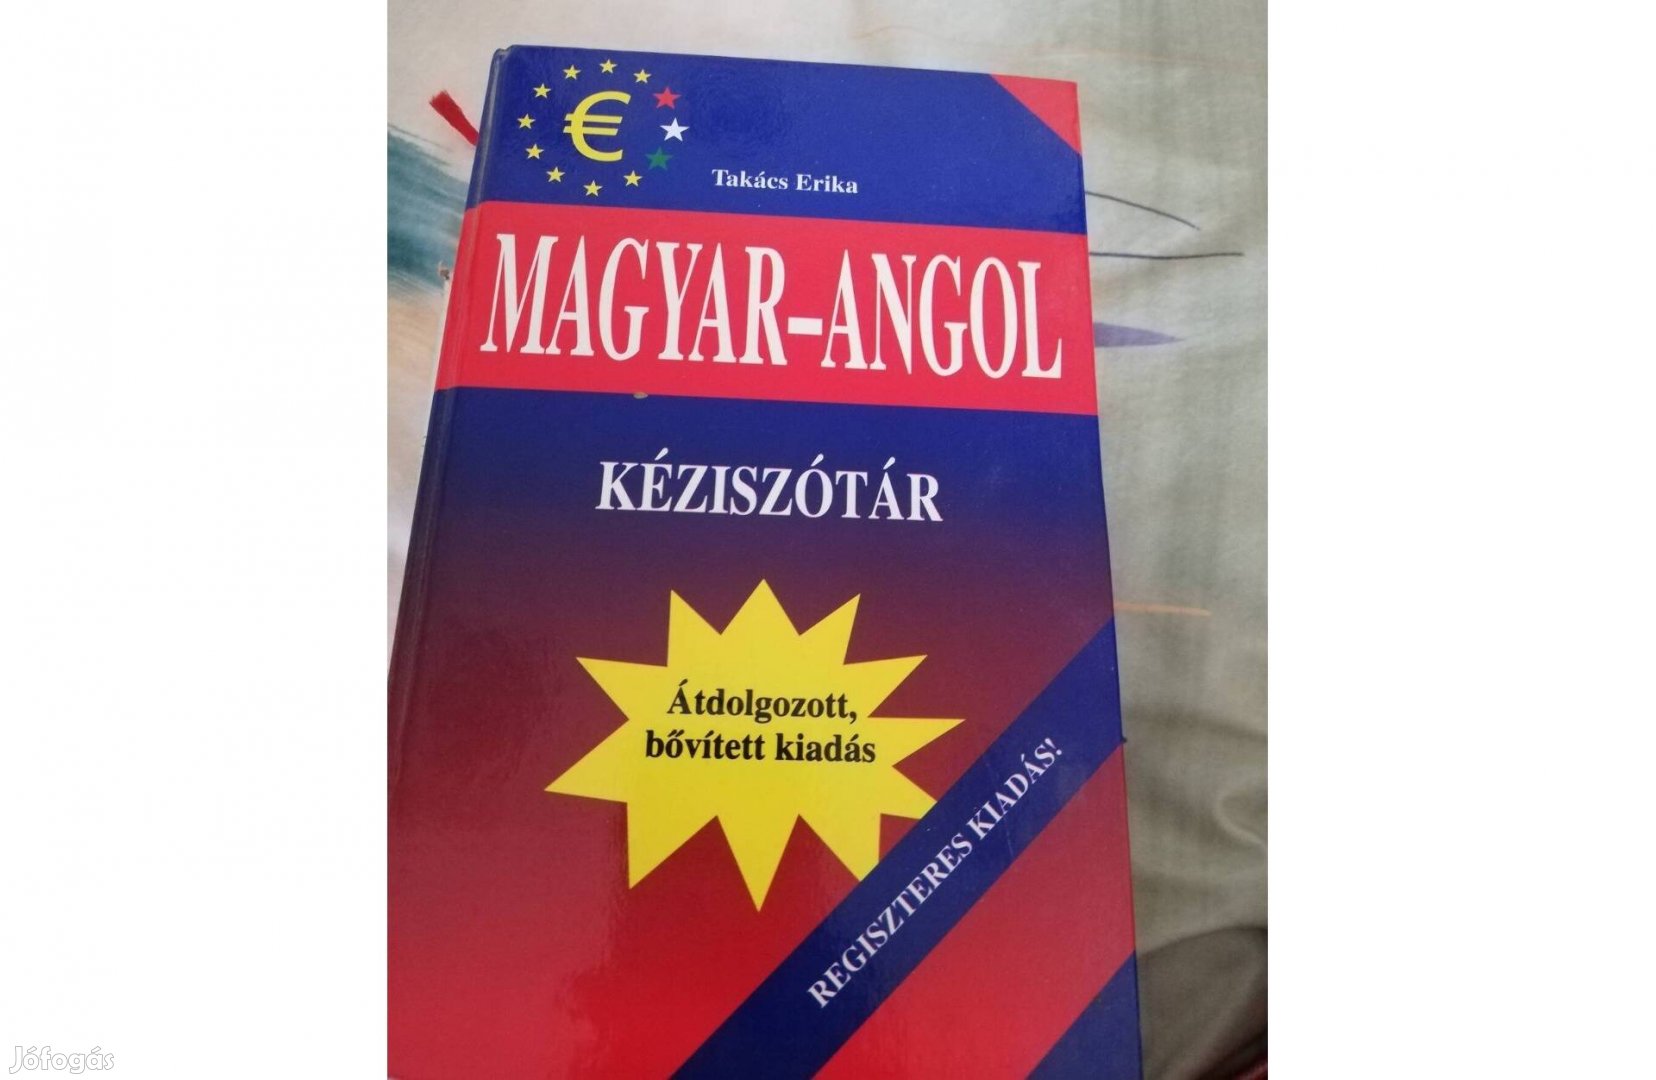 Magyar angol kézi szótár 1500 forint